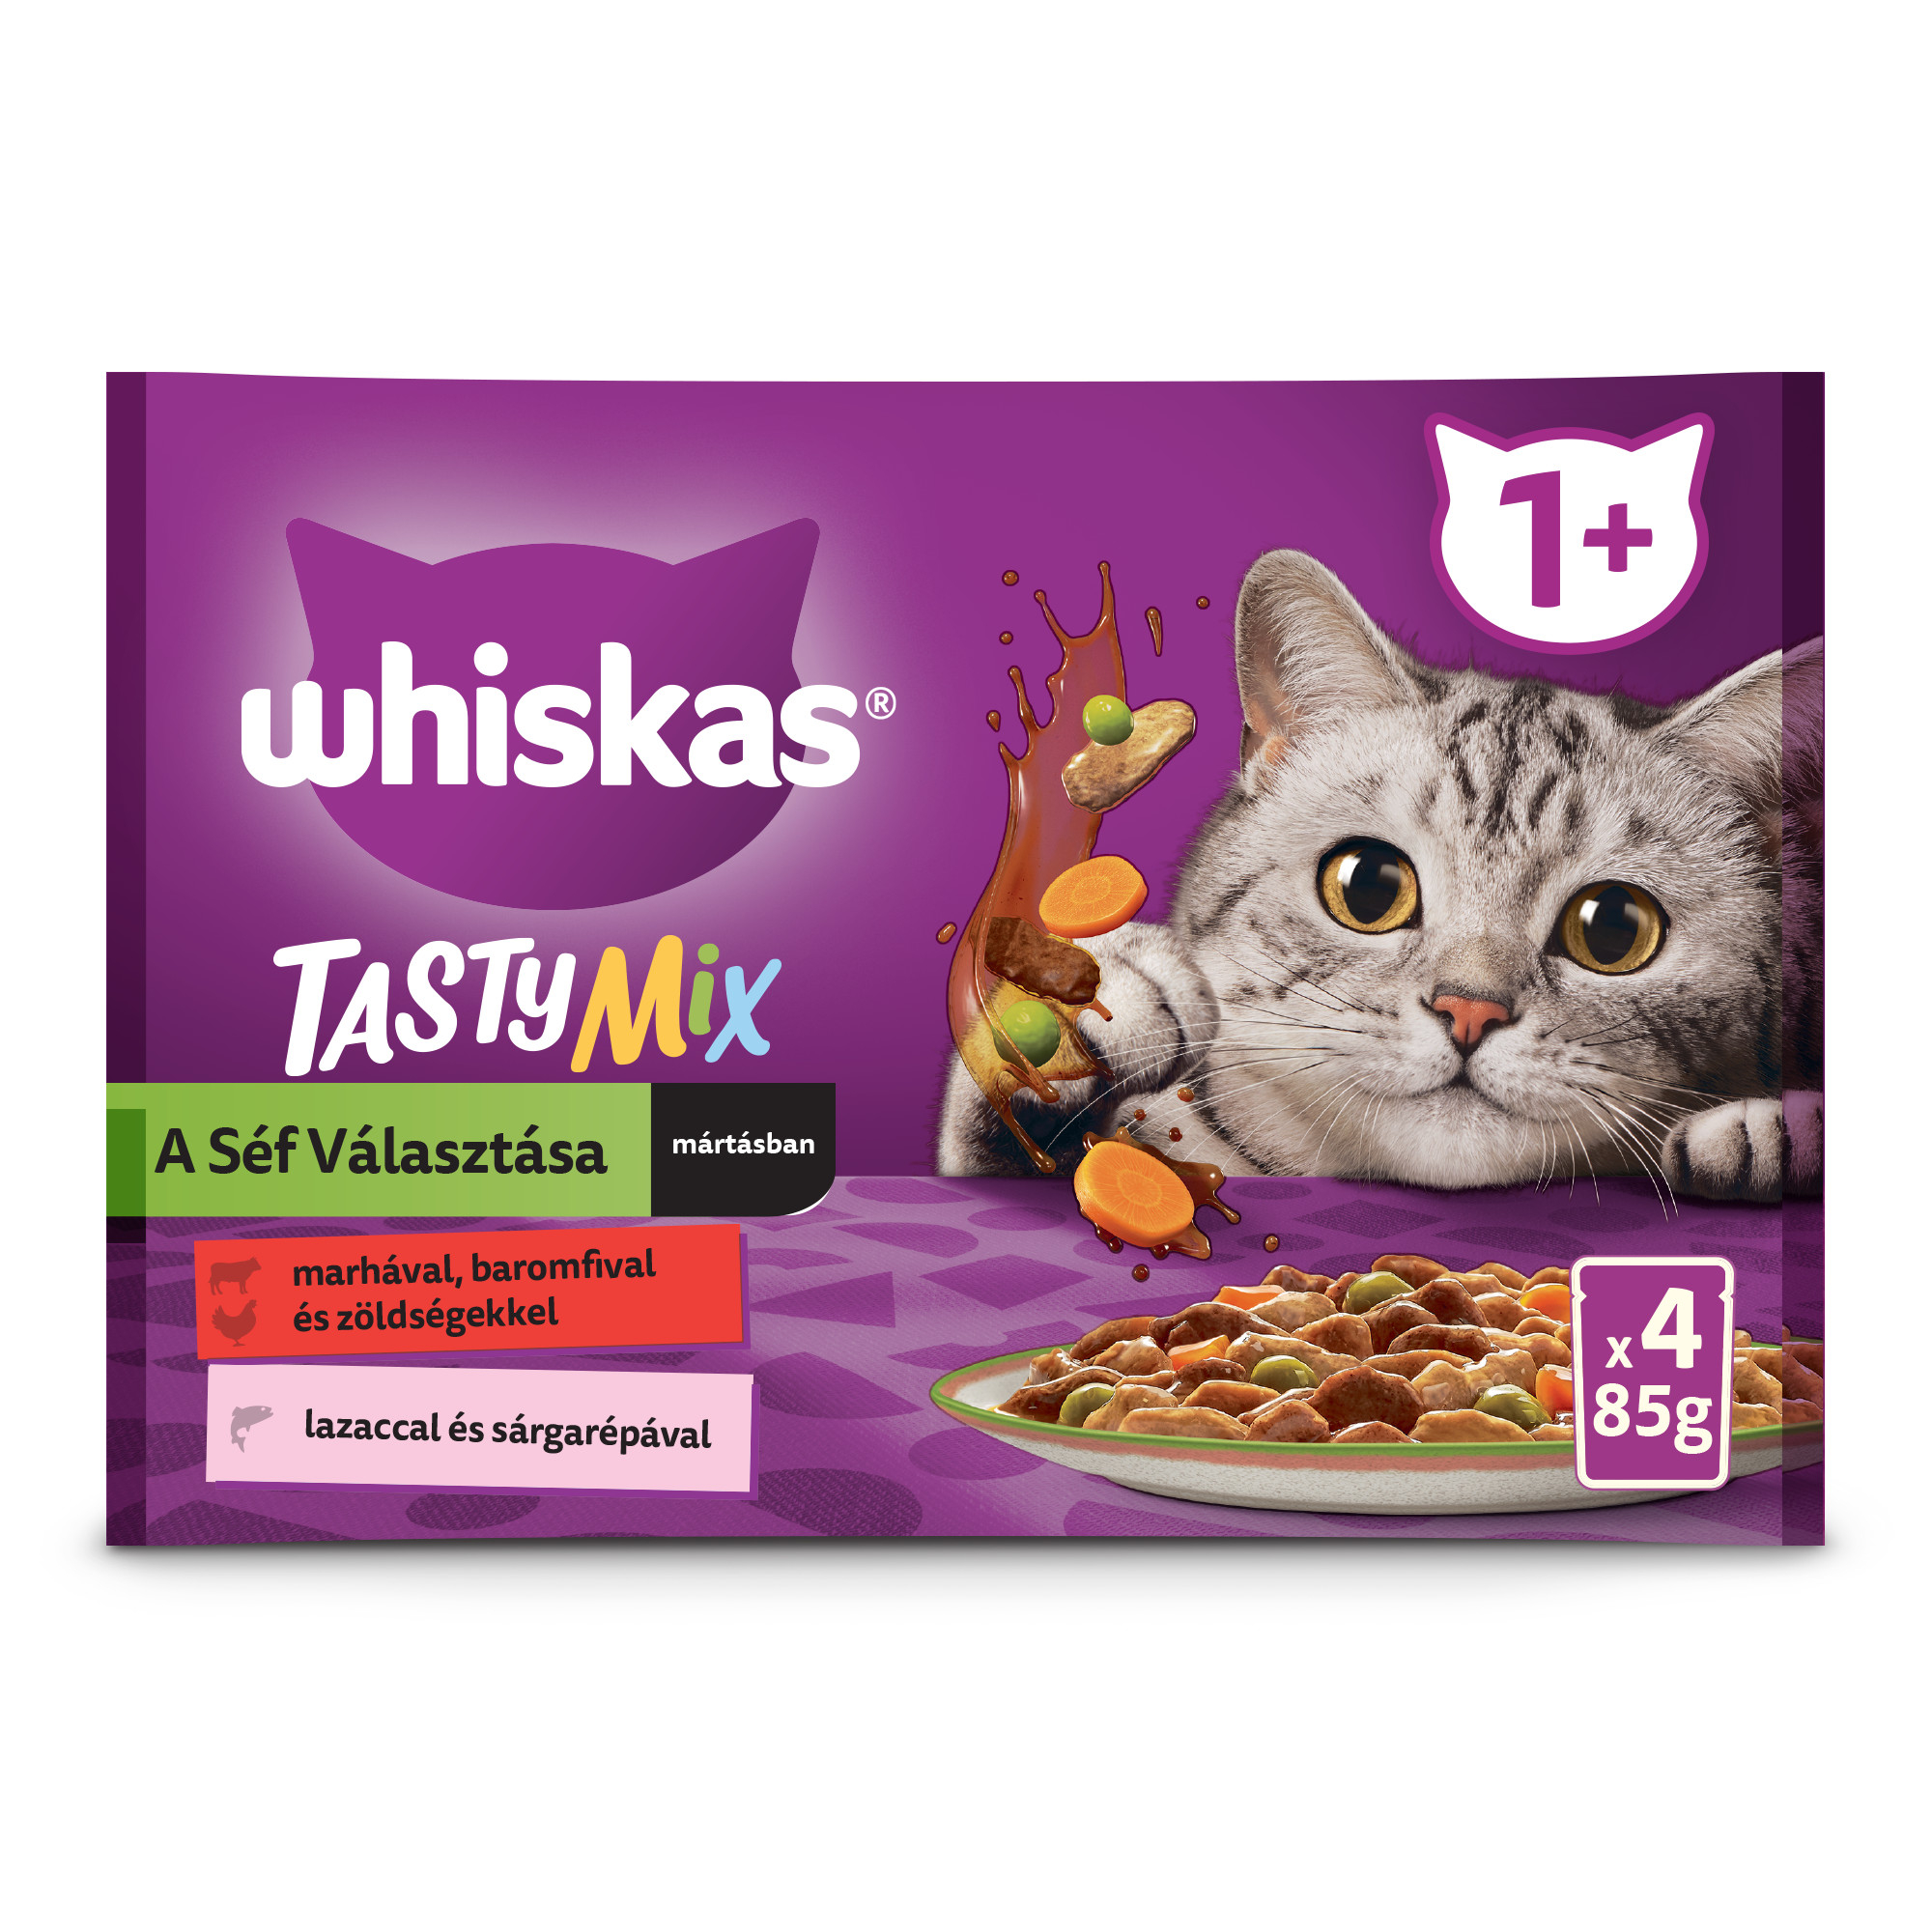 Whiskas Tasty Mix Chef's Choice macska tasak MP szószos 4x85g